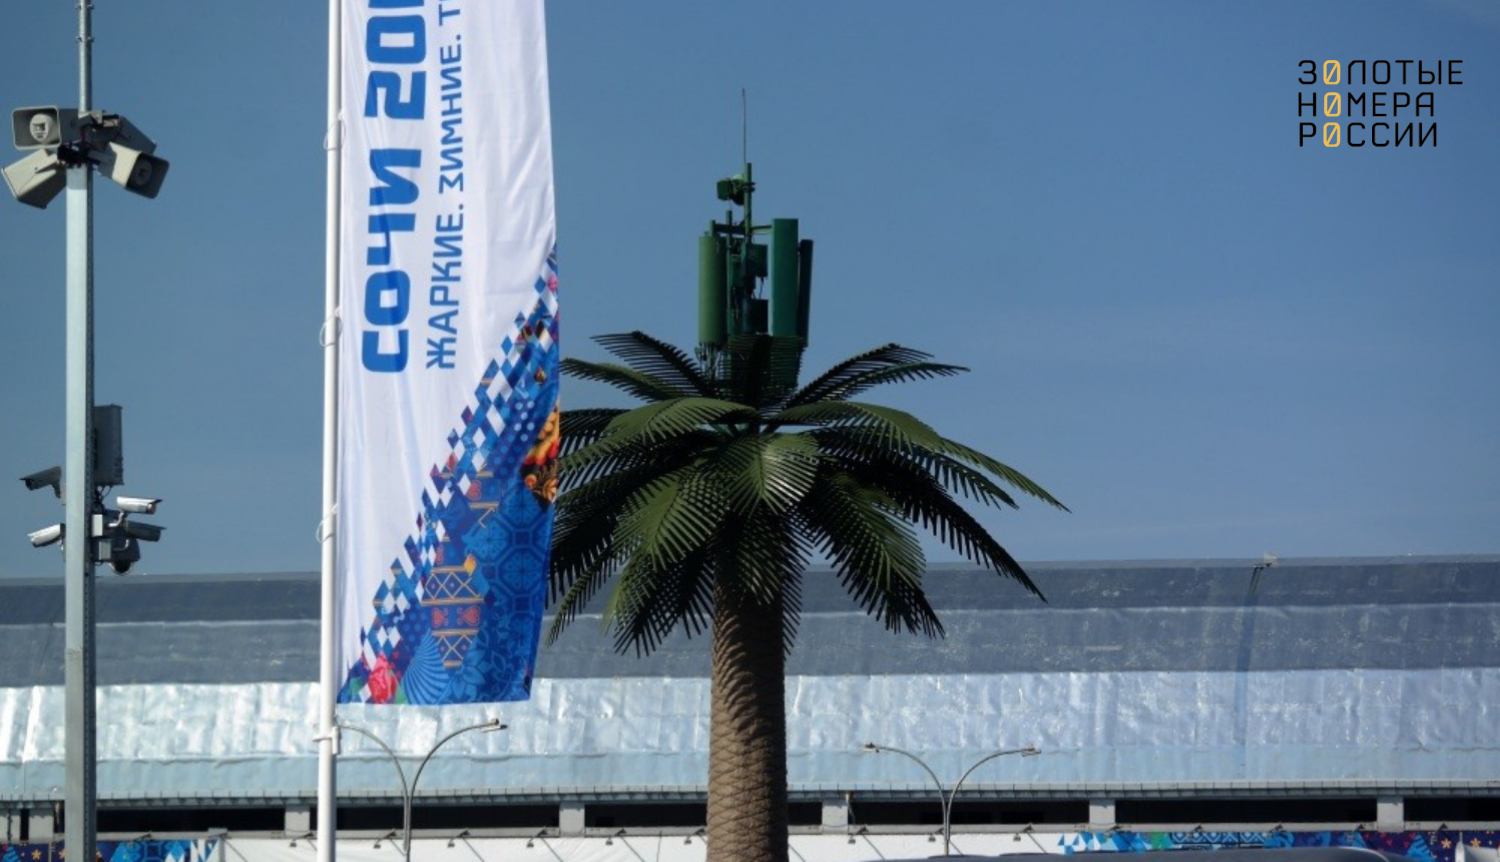 Вышки сотовой связи МегаФон замаскированные под пальмы в Сочи<br>